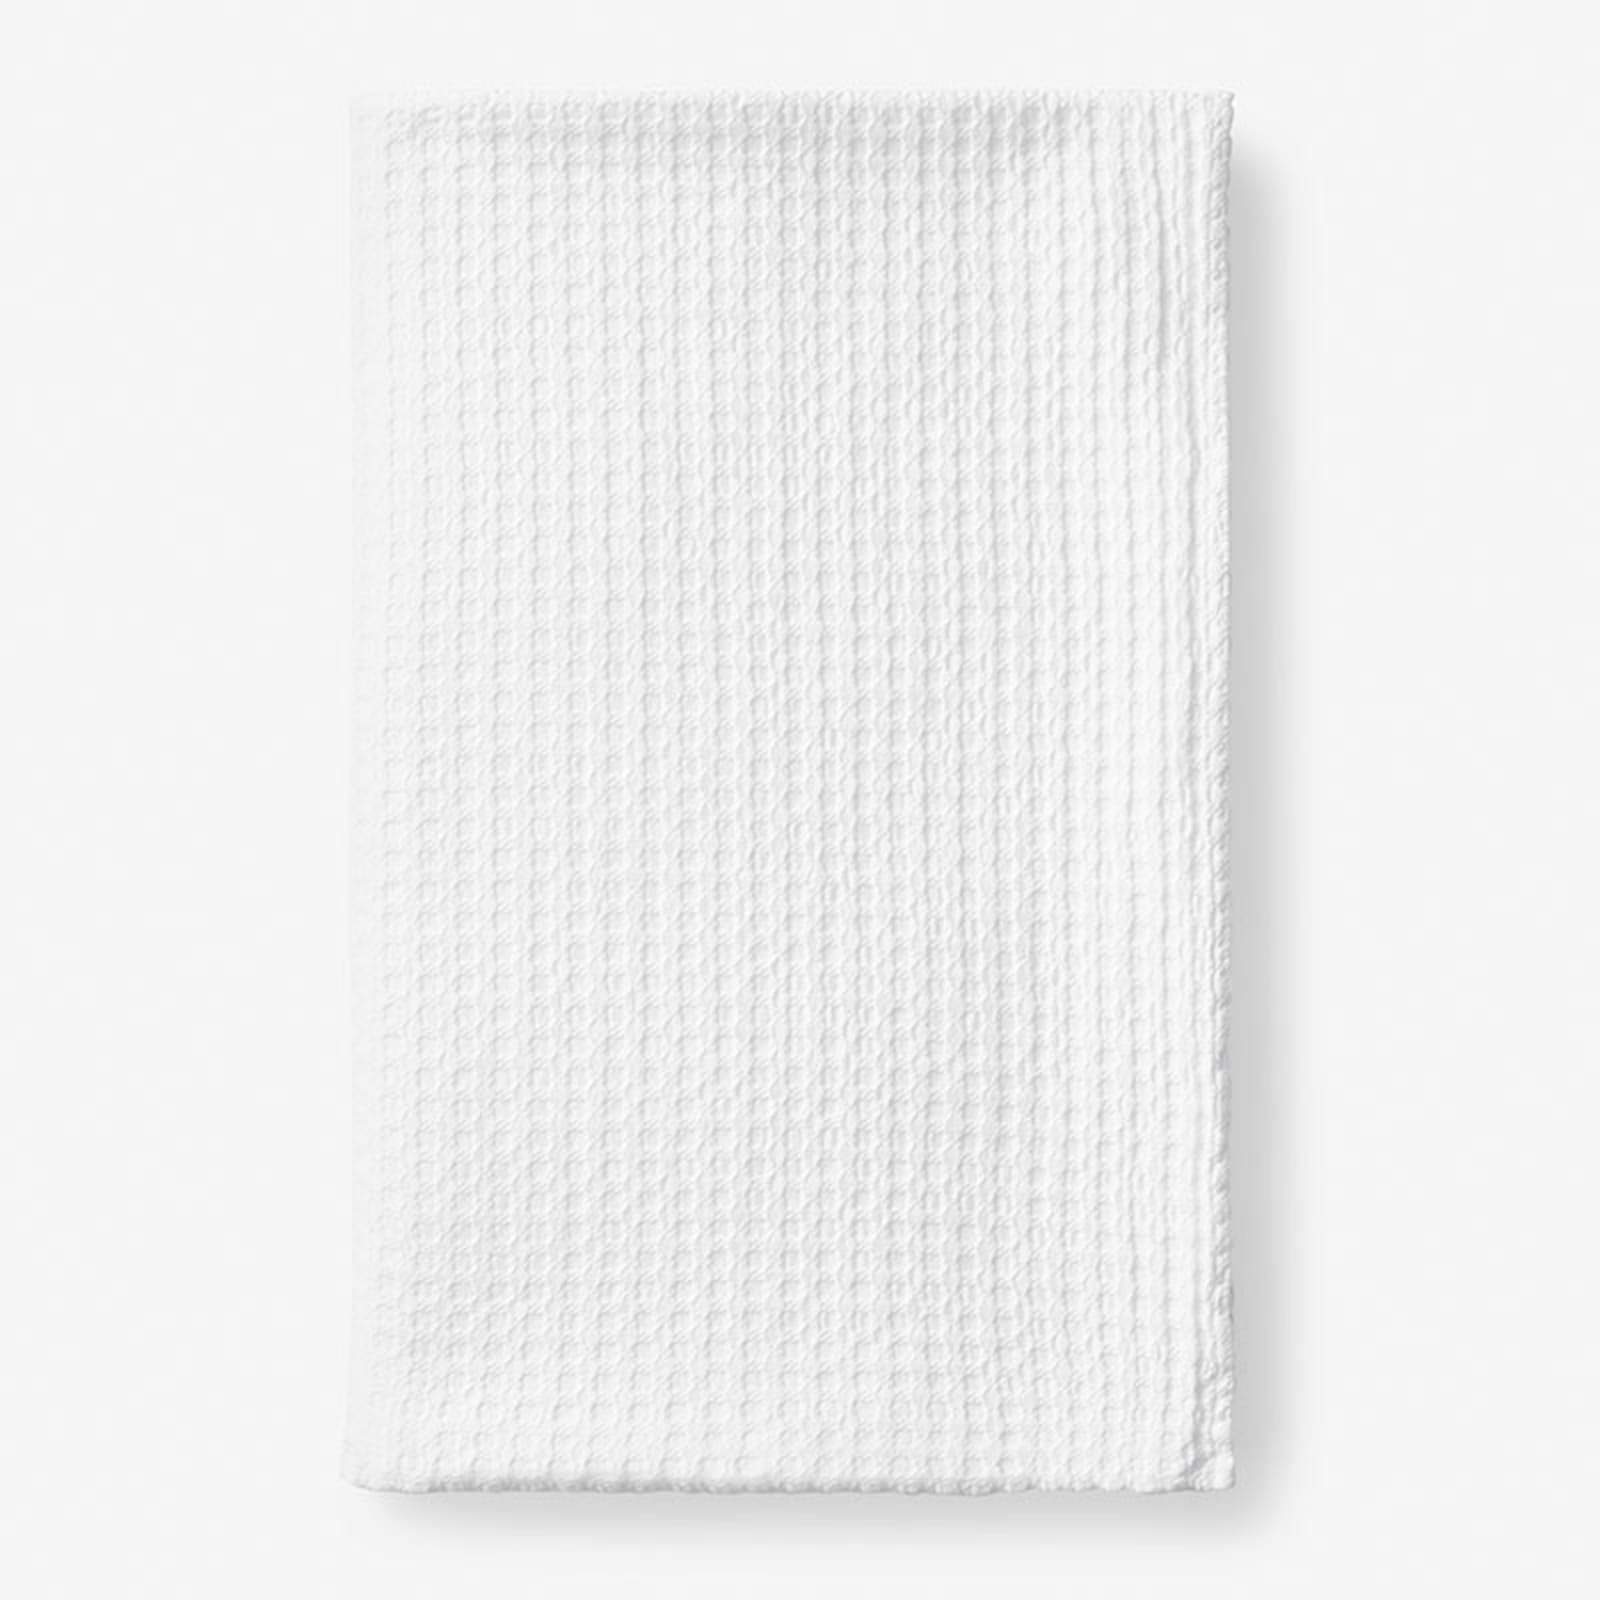 LV inspired white blanket  Boutique blanket, White blanket, Blanket